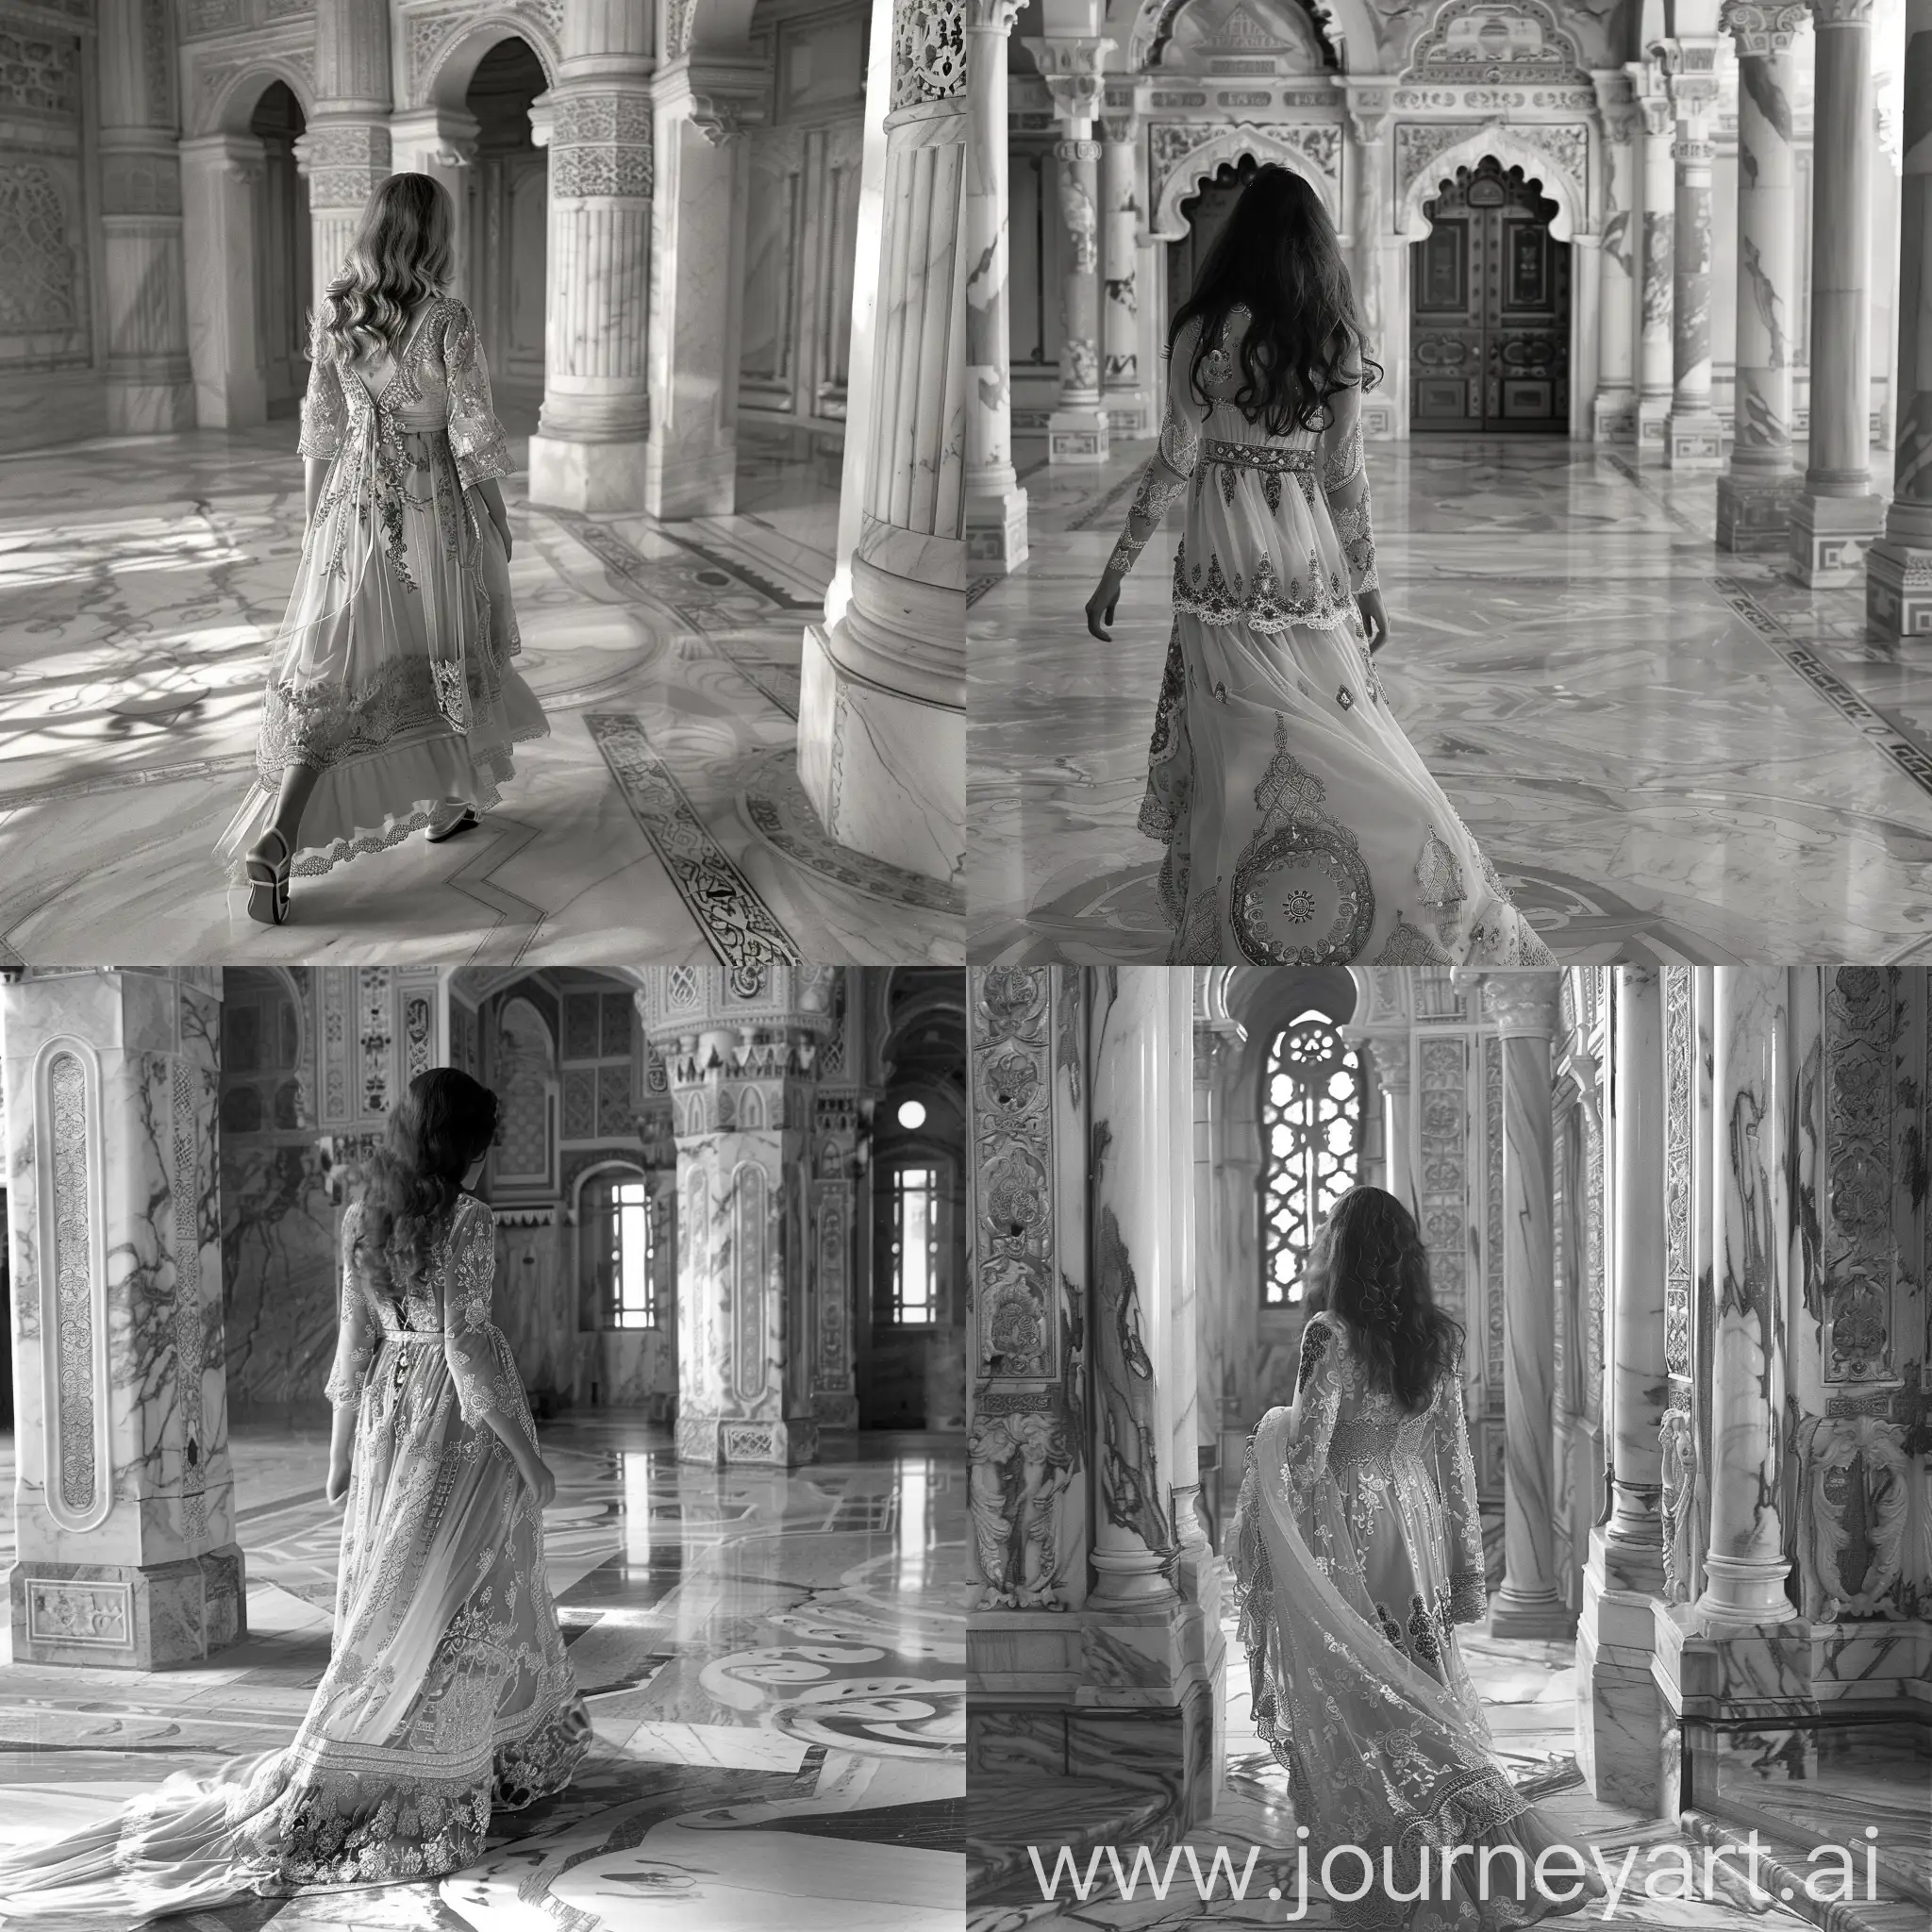 Девушка с длинным платьем из турецкого орнамента, кружева идёт по мраморному восточному дворцу